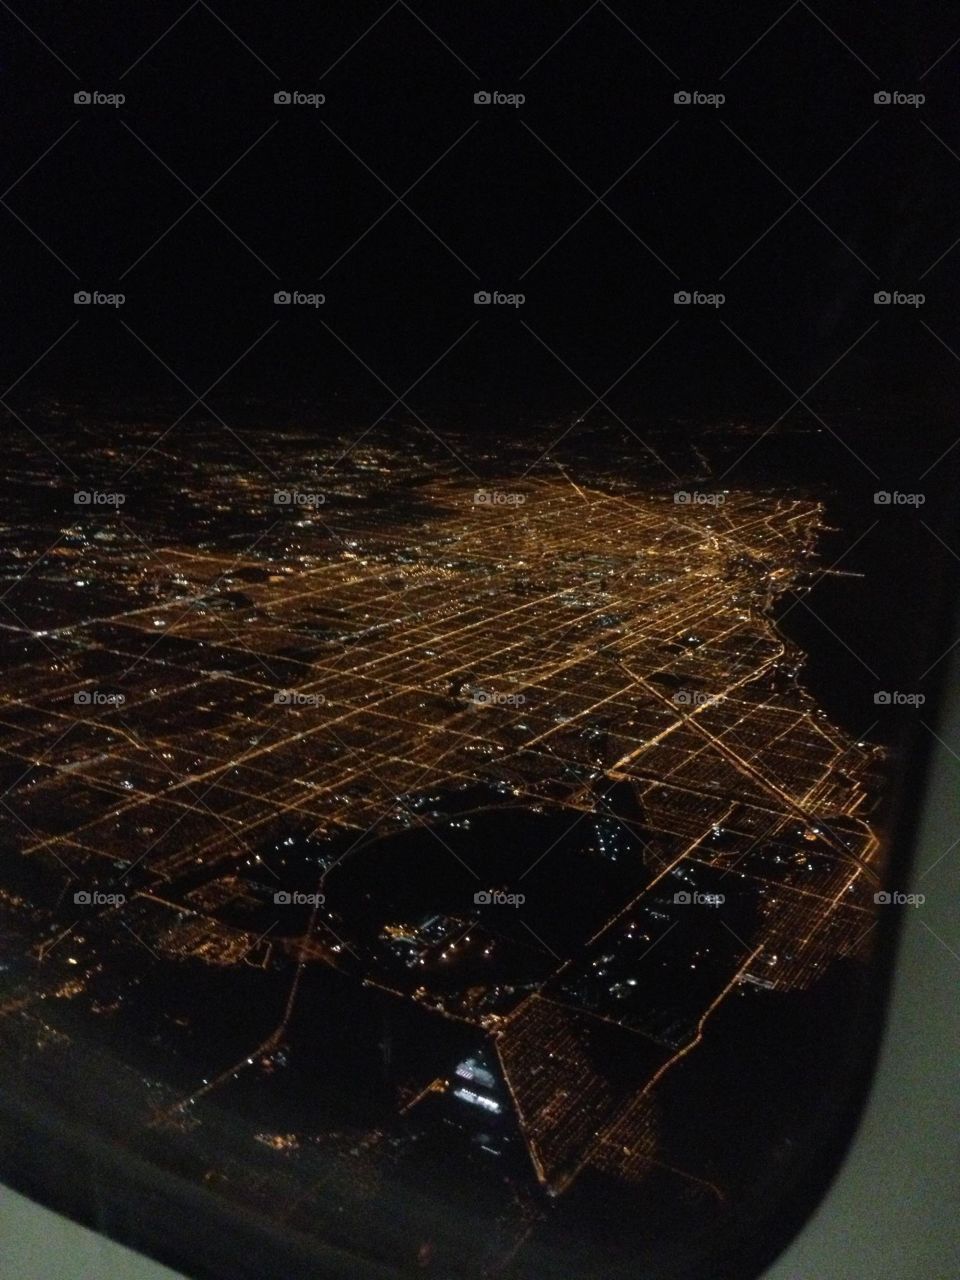 Chicago illumination 